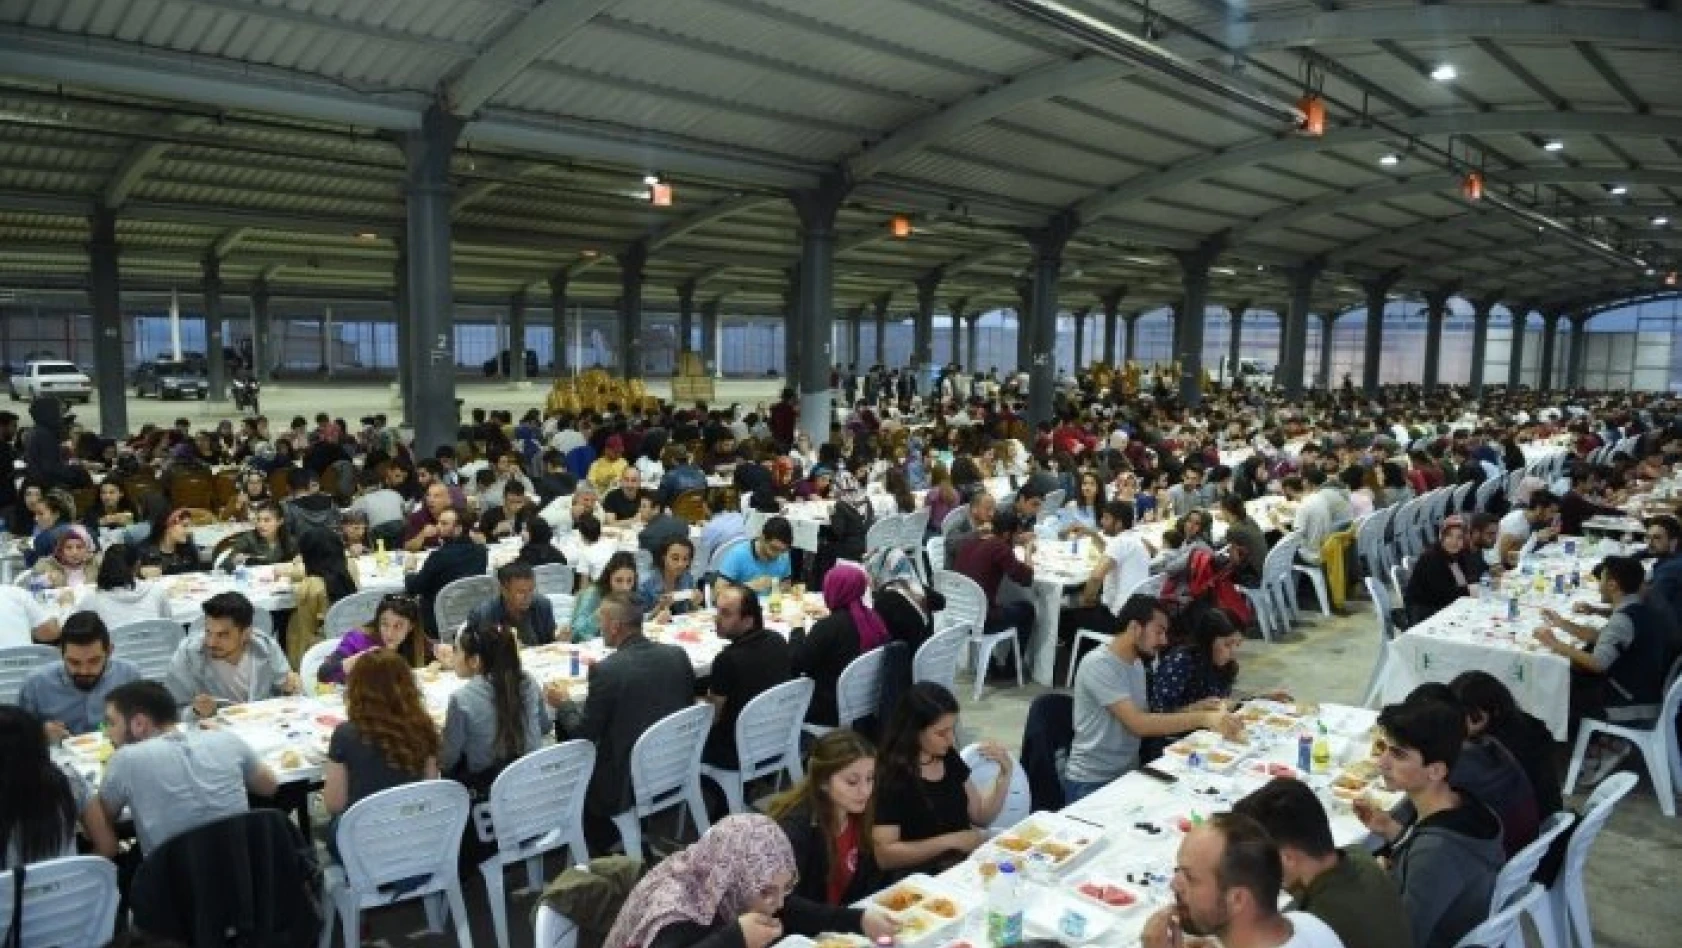 Kastamonu Belediyesi 115 bin kişilik iftar sofrası kuracak